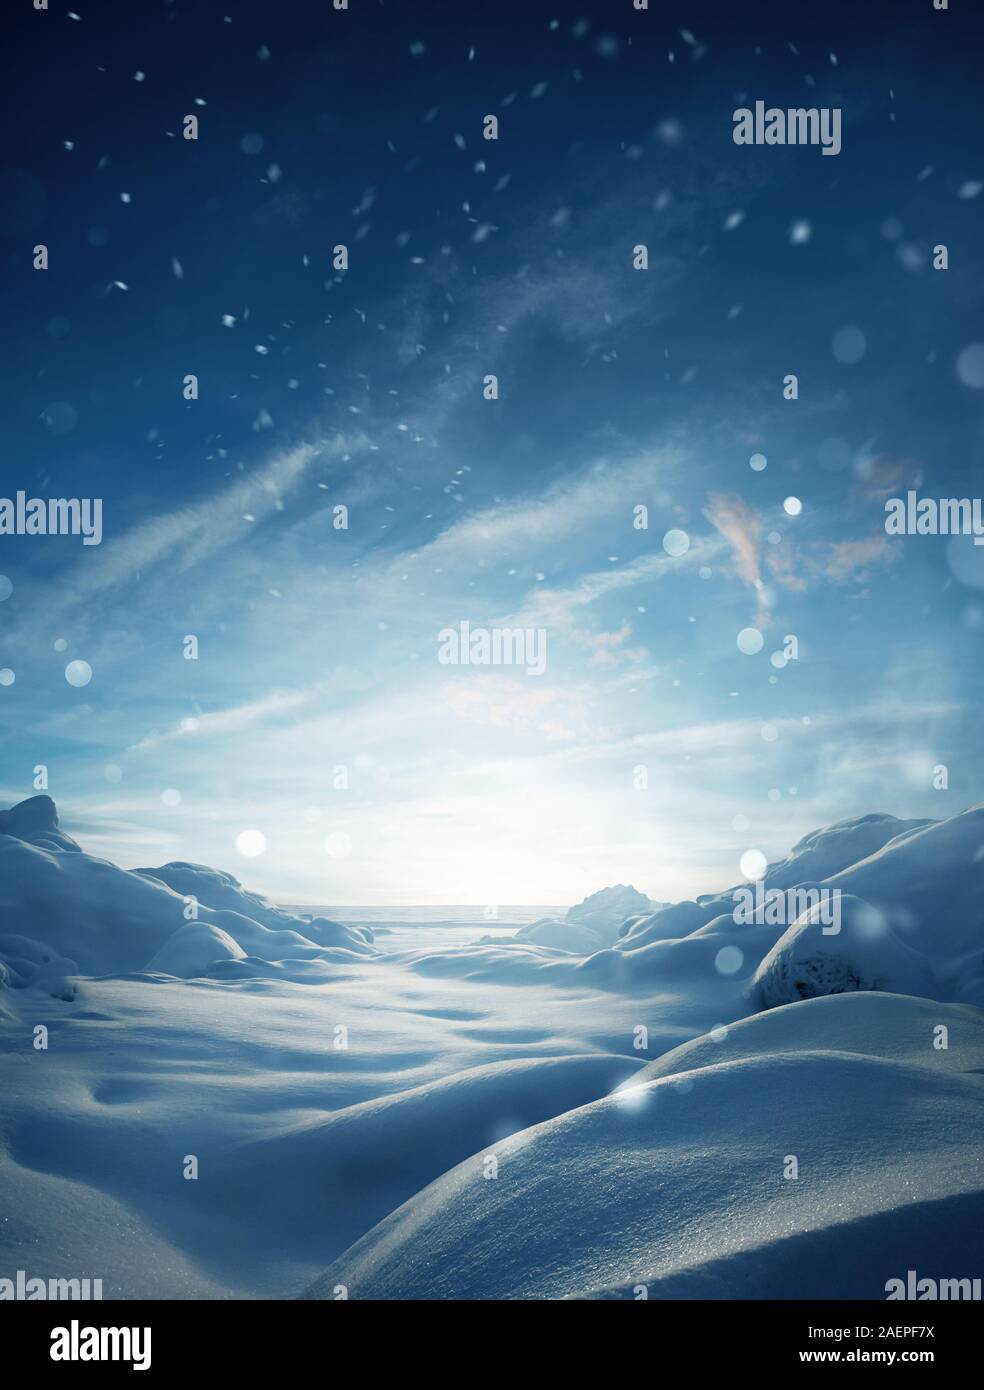 Eine mystische Winter verschneite Landschaft Weihnachten Hintergrund mit Partikeln von Schnee fallen. Stockfoto